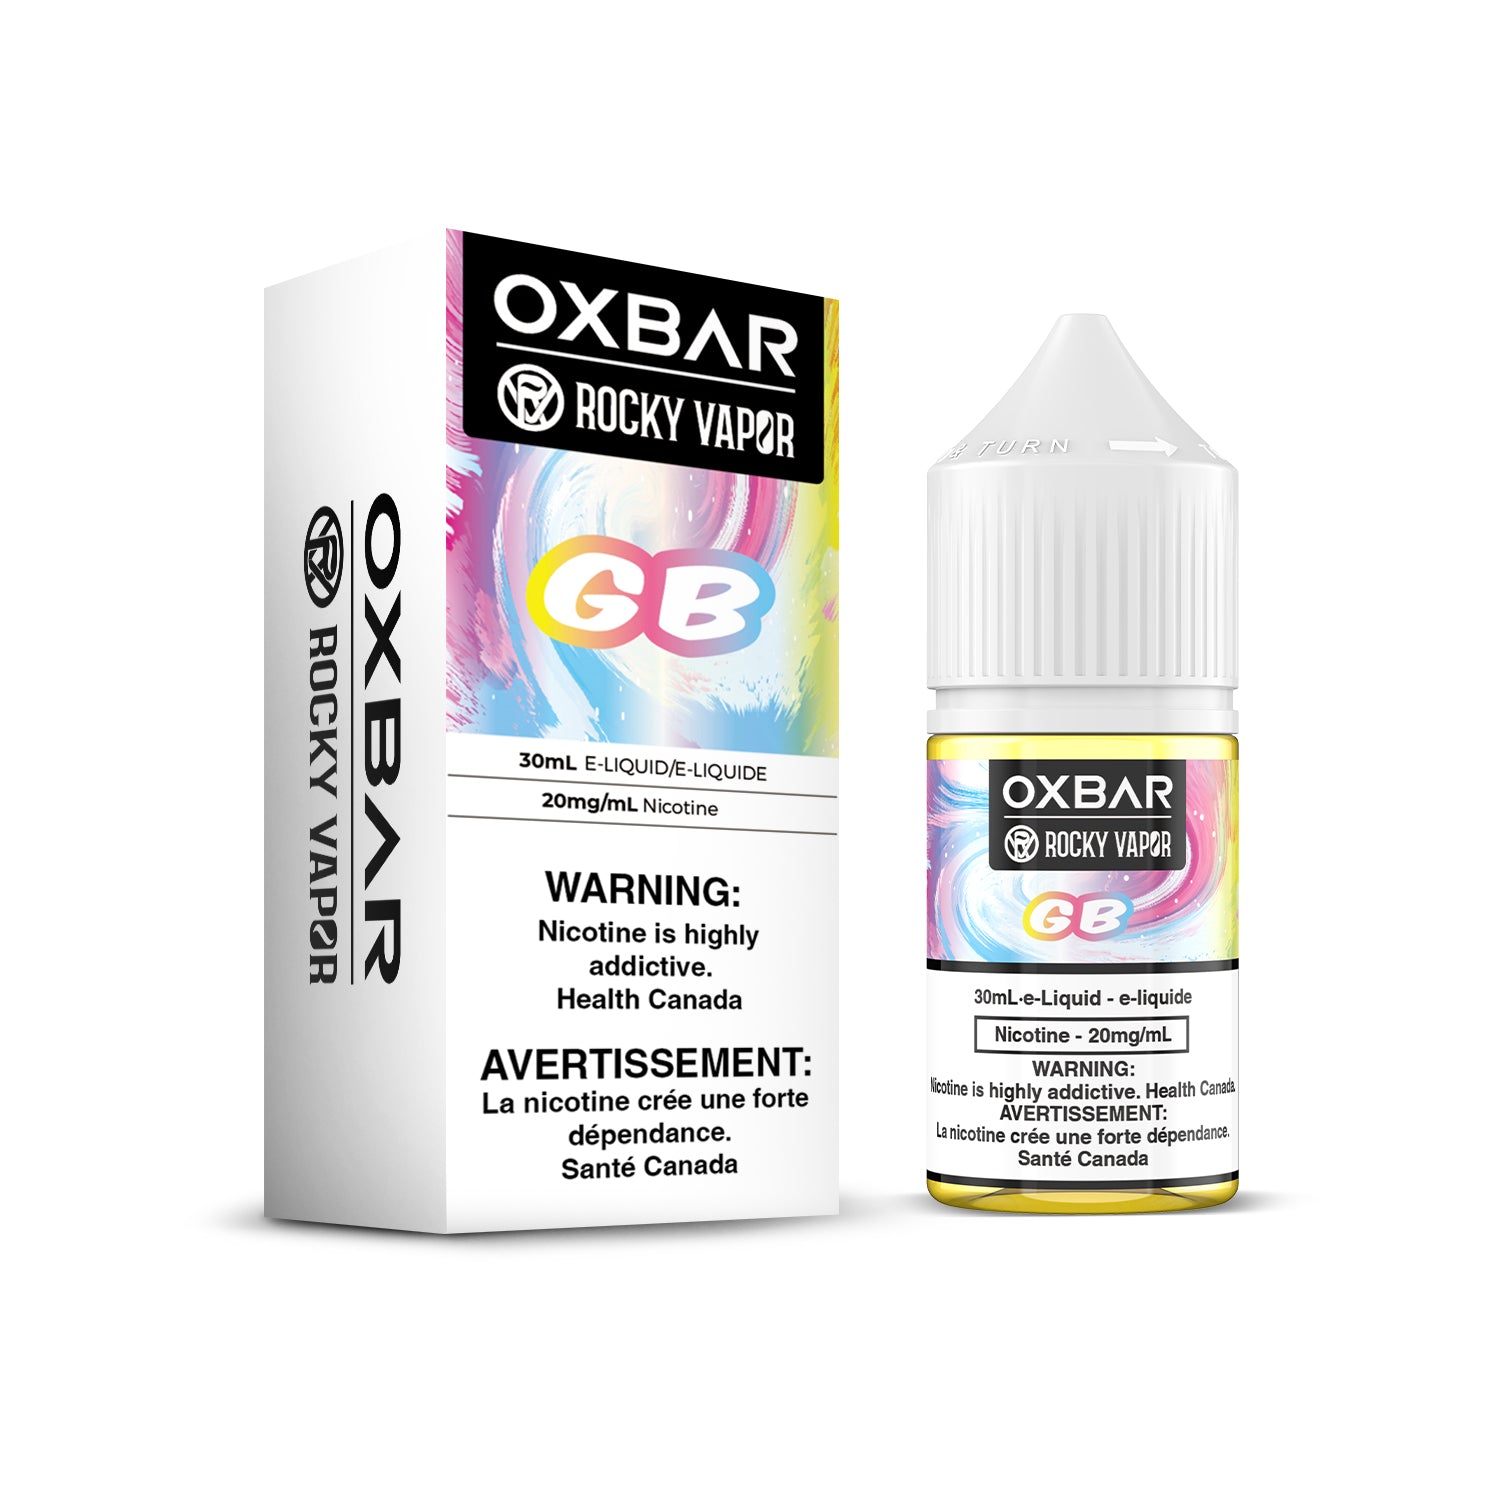 GB - Rocky Vapor Oxbar E-Liquids - 30ml